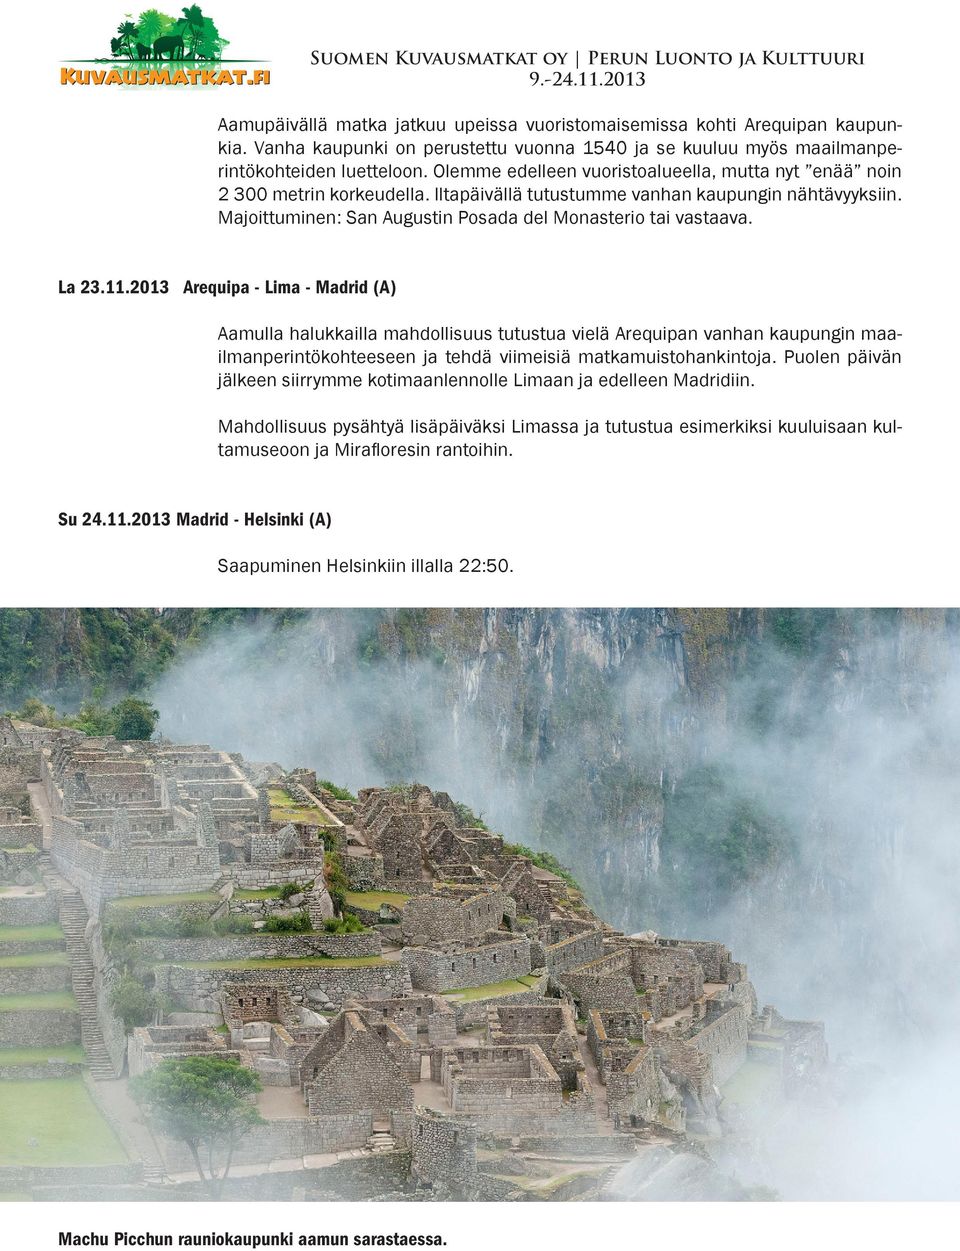 La 23.11.2013 Arequipa - Lima - Madrid (A) Aamulla halukkailla mahdollisuus tutustua vielä Arequipan vanhan kaupungin maailmanperintökohteeseen ja tehdä viimeisiä matkamuistohankintoja.